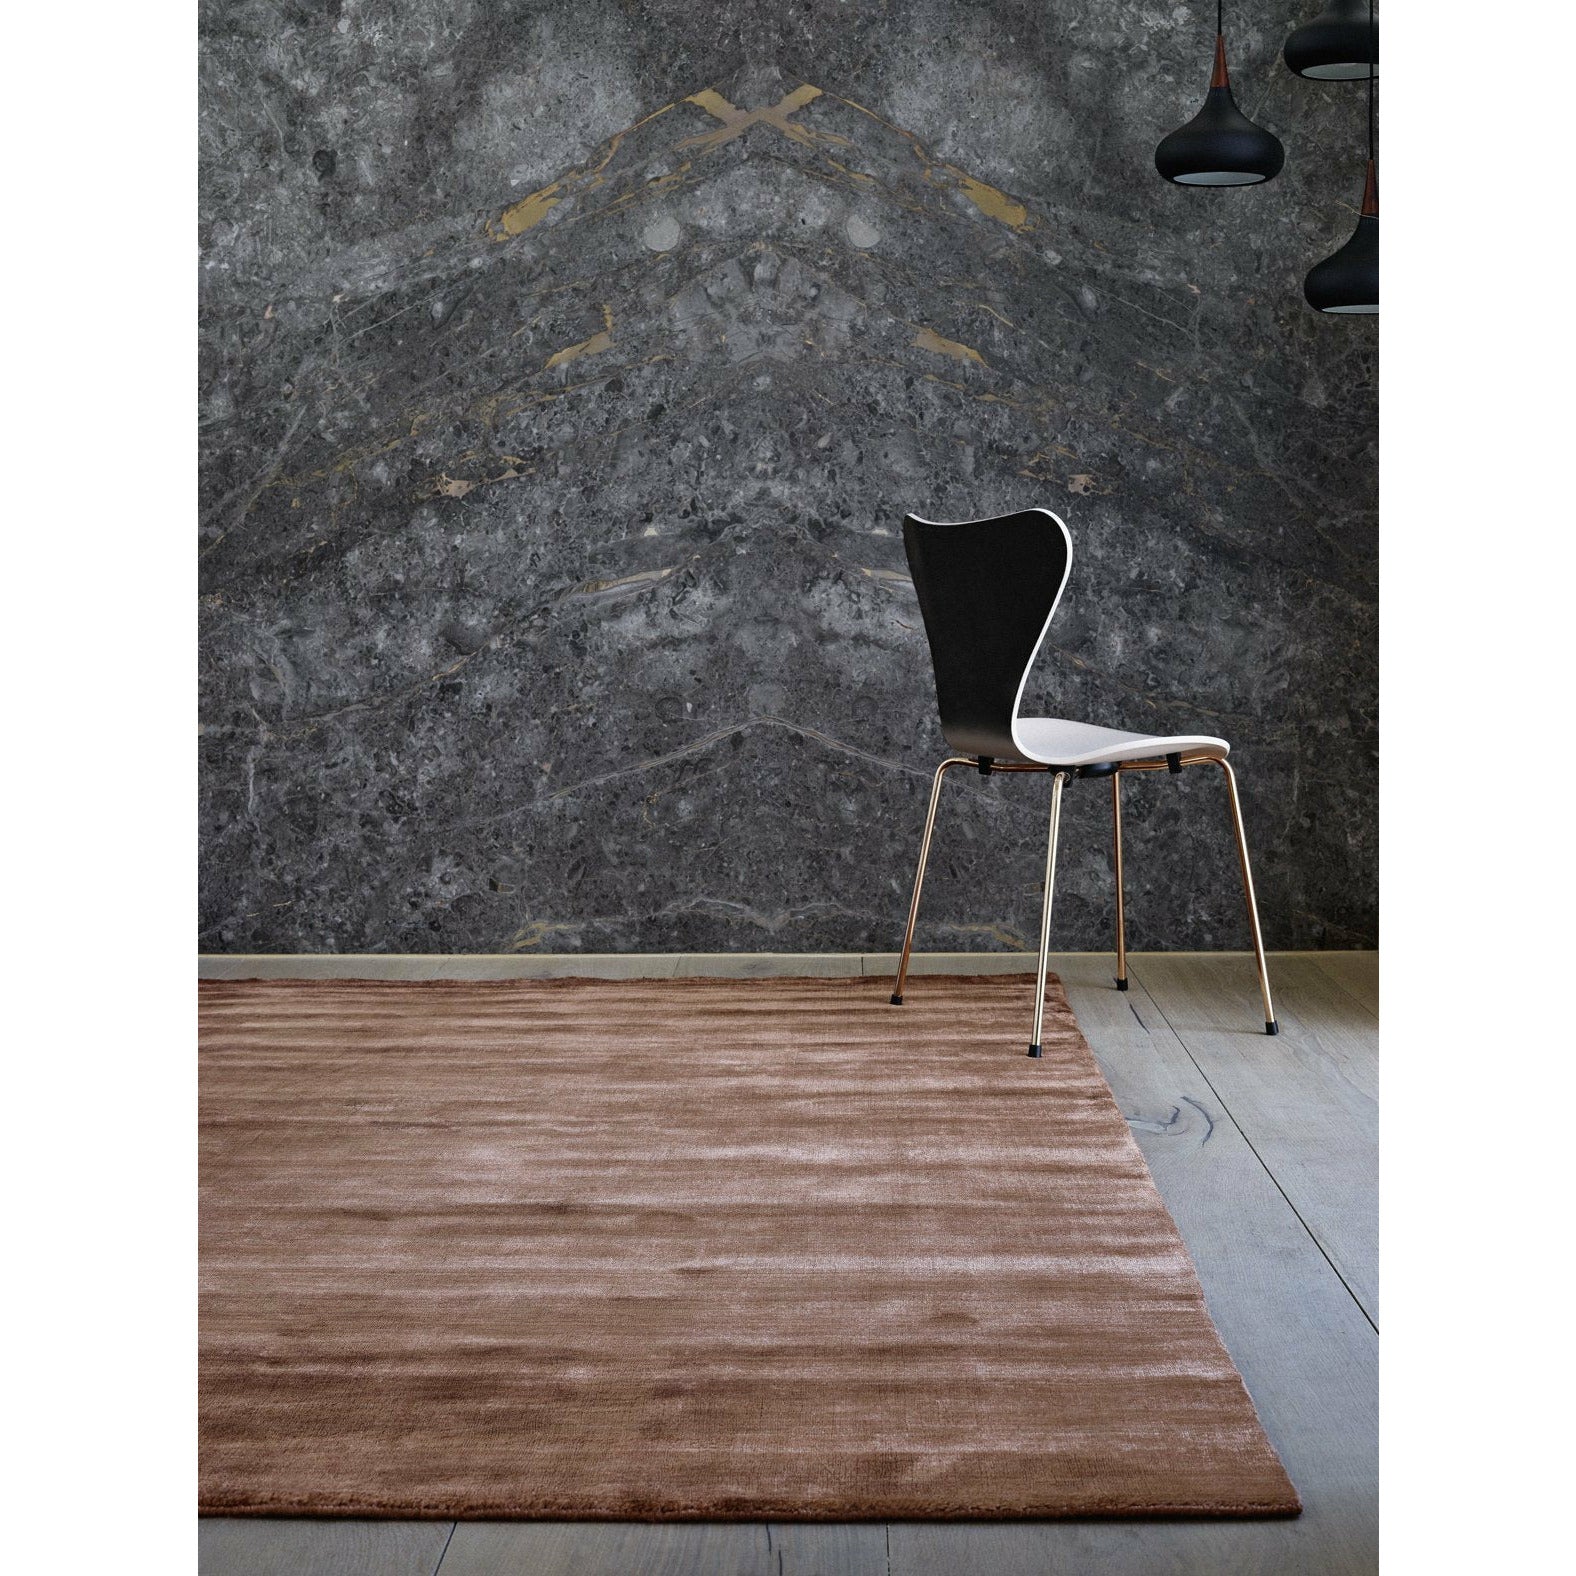 Massimo Bambu -mattan koppar, 200x300 cm